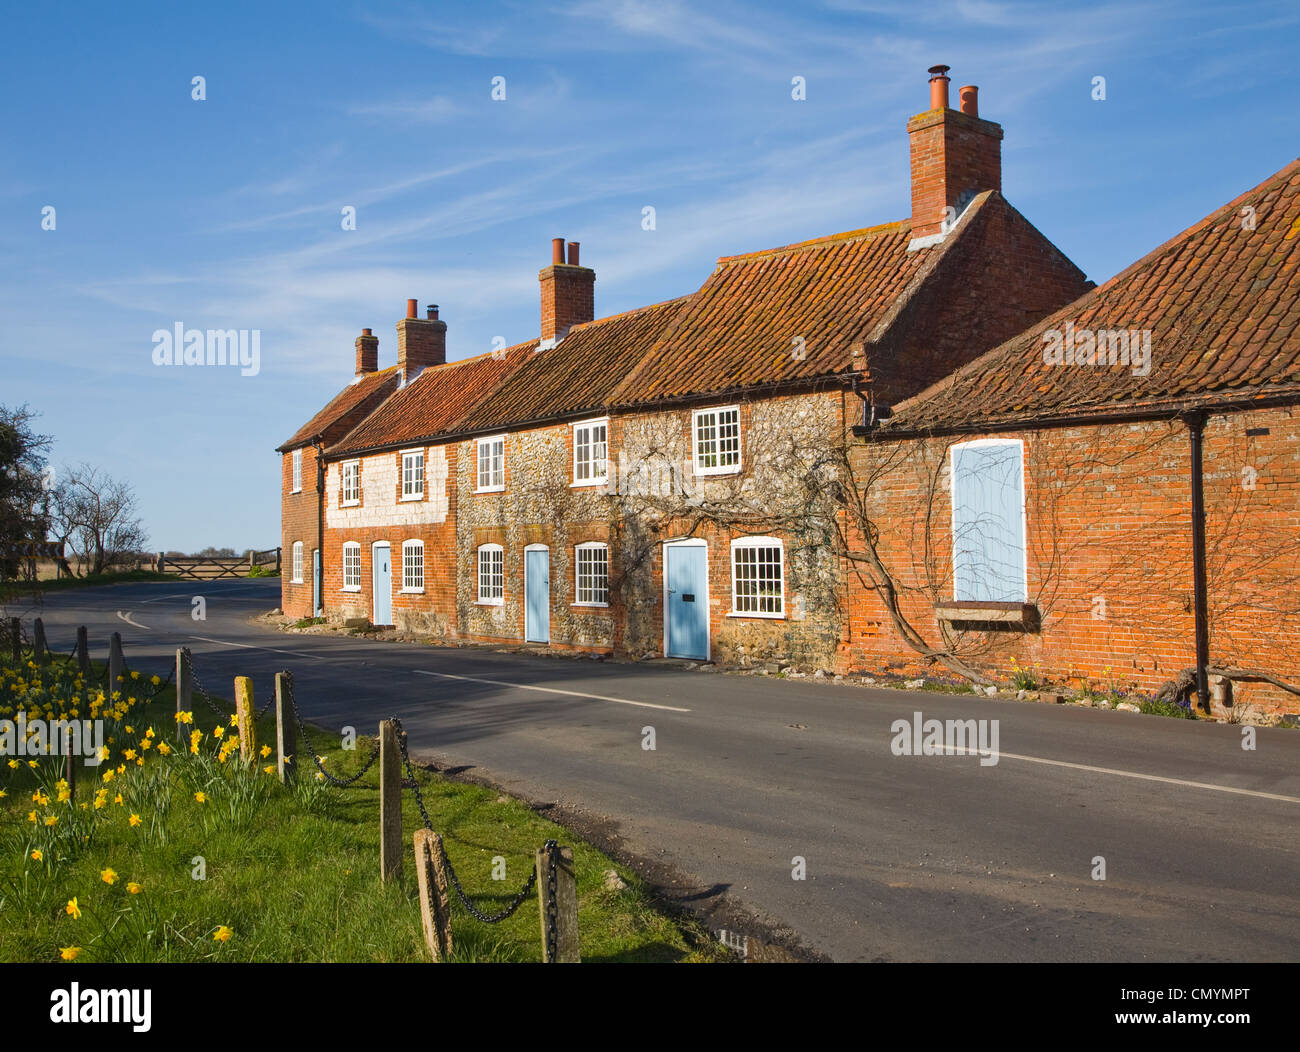 Schöne Ferienhäuser am Burnham Overy, Norfolk, England Stockfoto